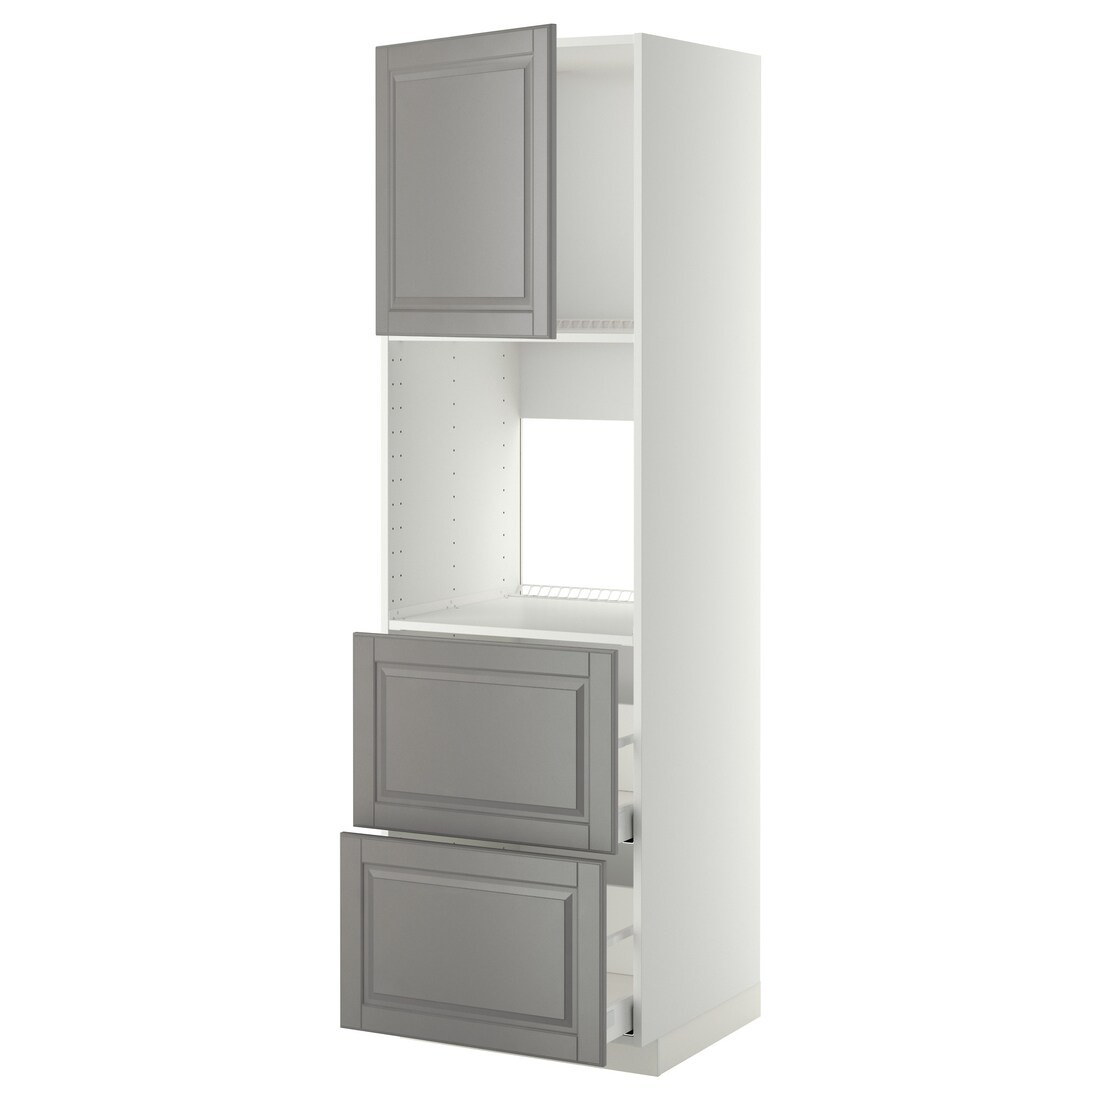 IKEA METOD МЕТОД / MAXIMERA МАКСИМЕРА Высокий шкаф для духовки с дверцей / ящиками, белый / Bodbyn серый, 60x60x200 см 59463296 | 594.632.96